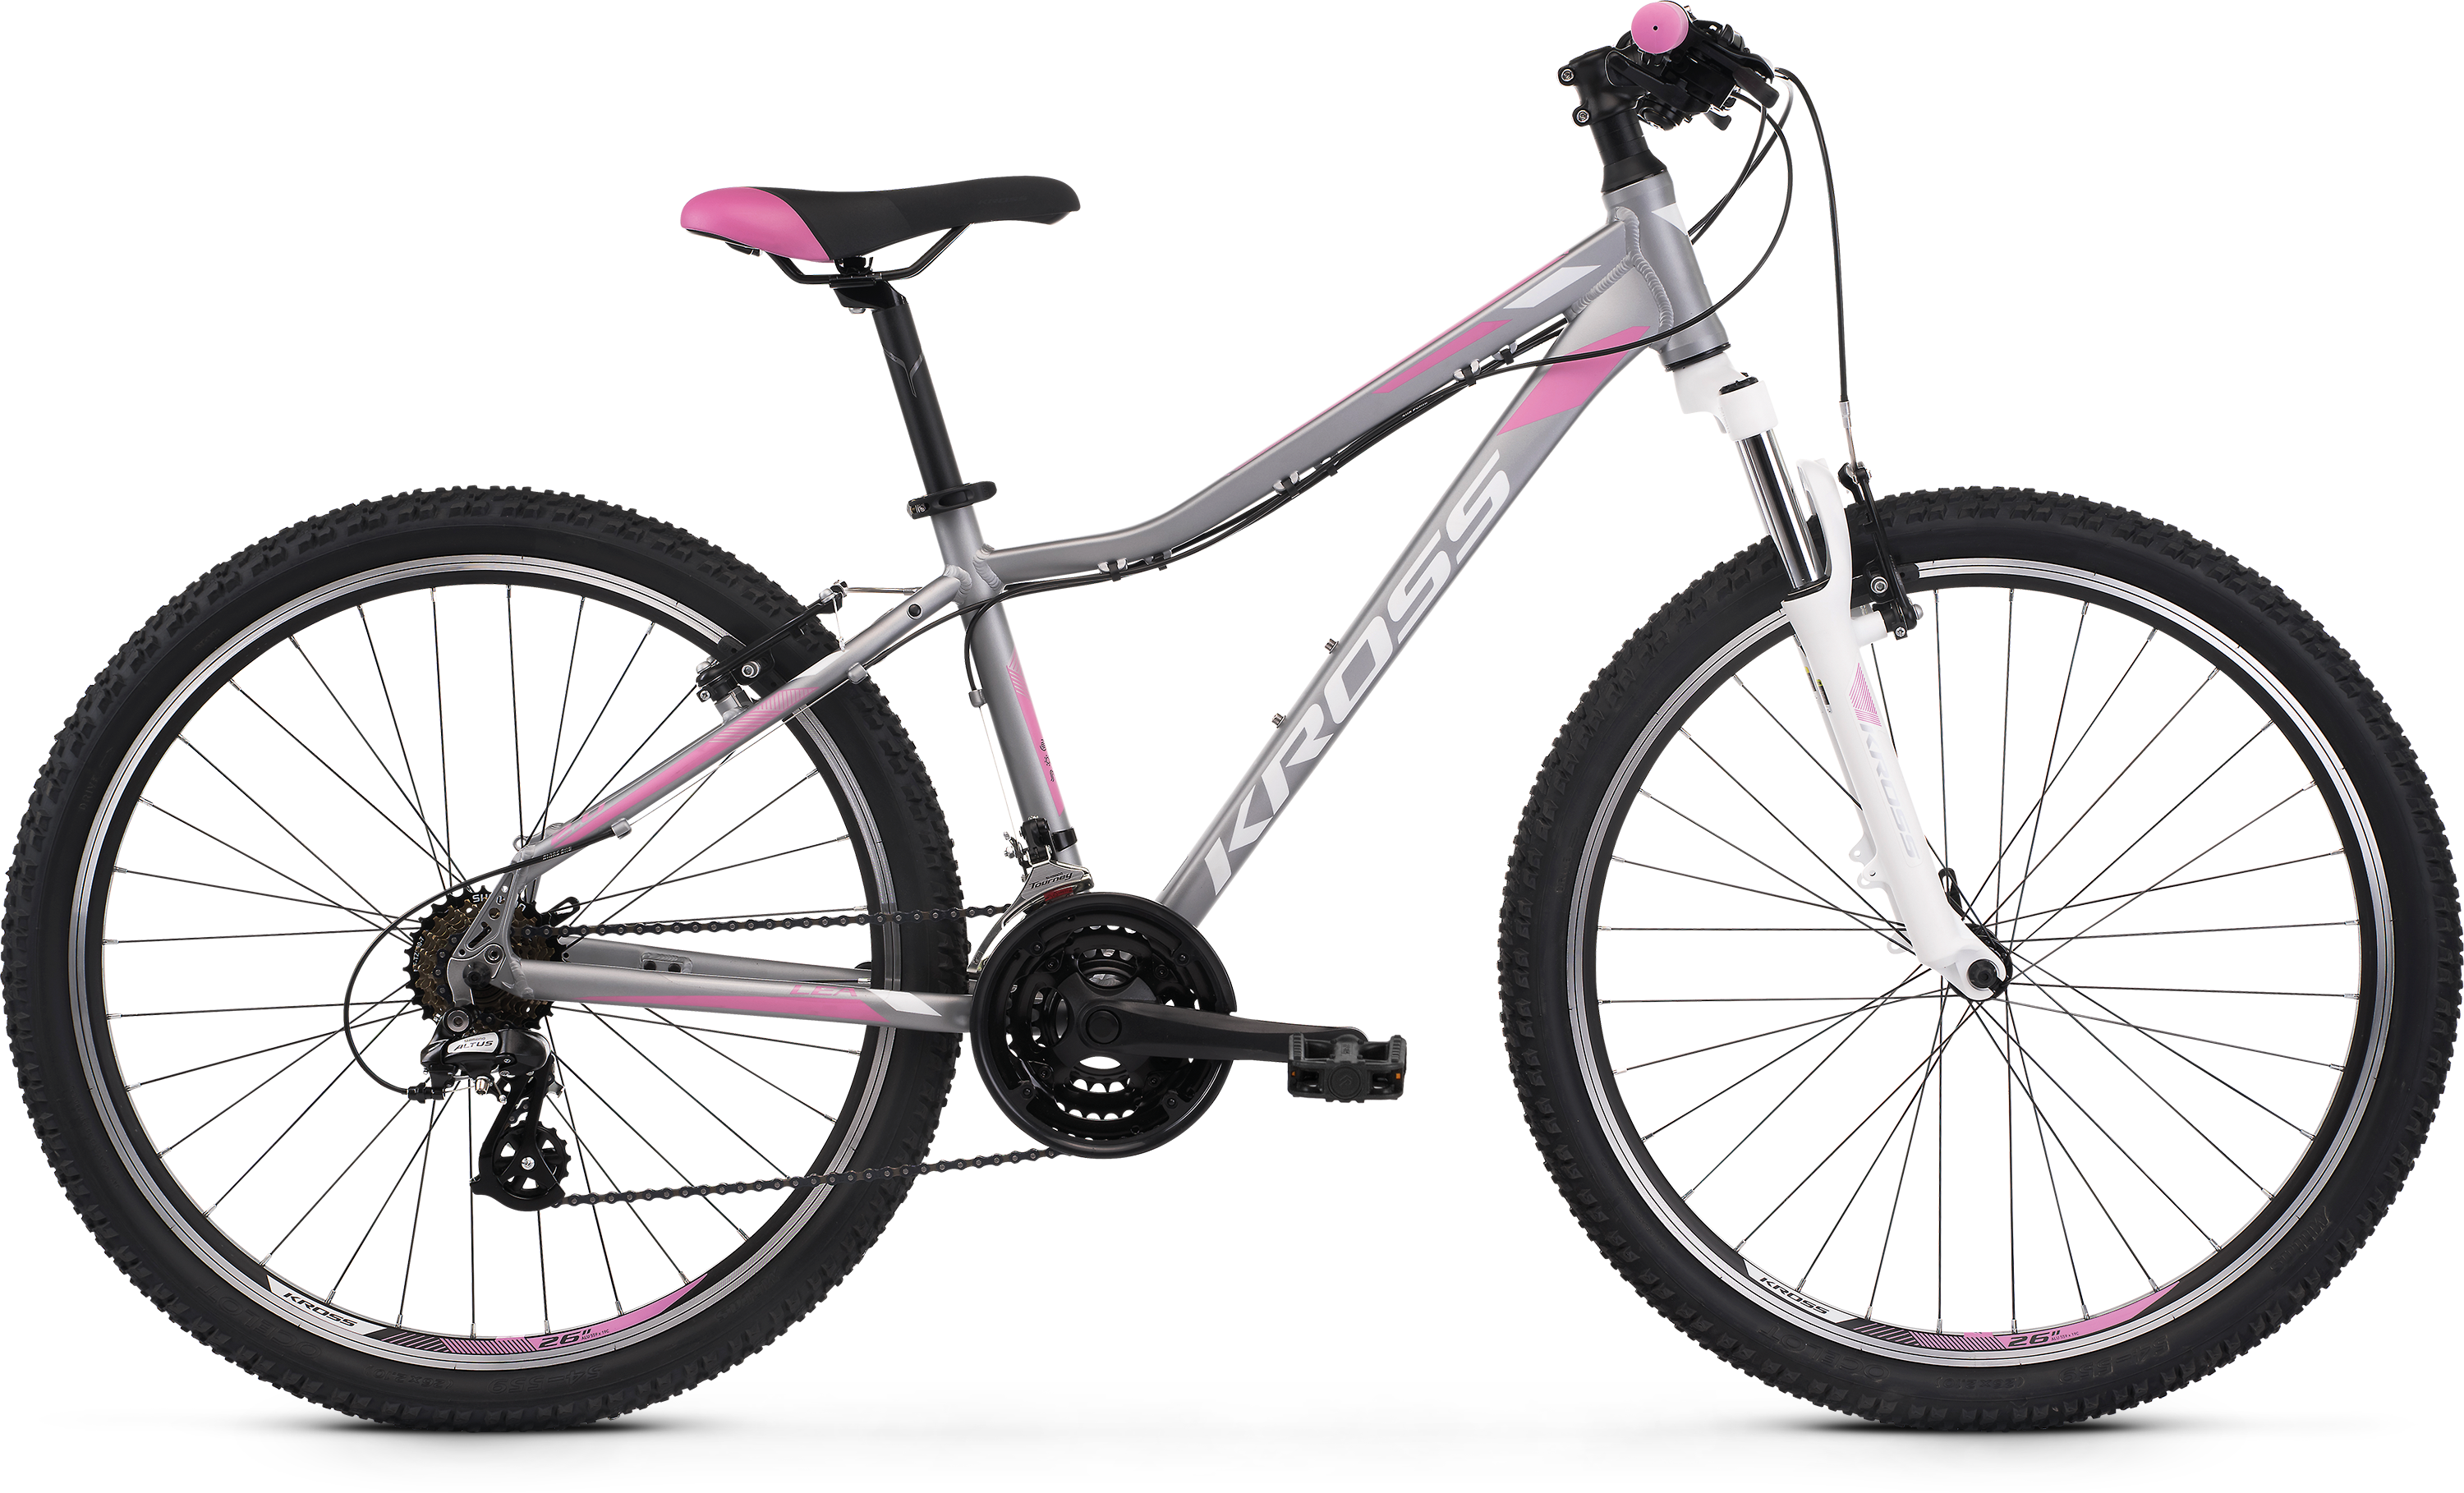 Bicykel Kross Lea 2.0 2022 26 silver/white/pink XS 15